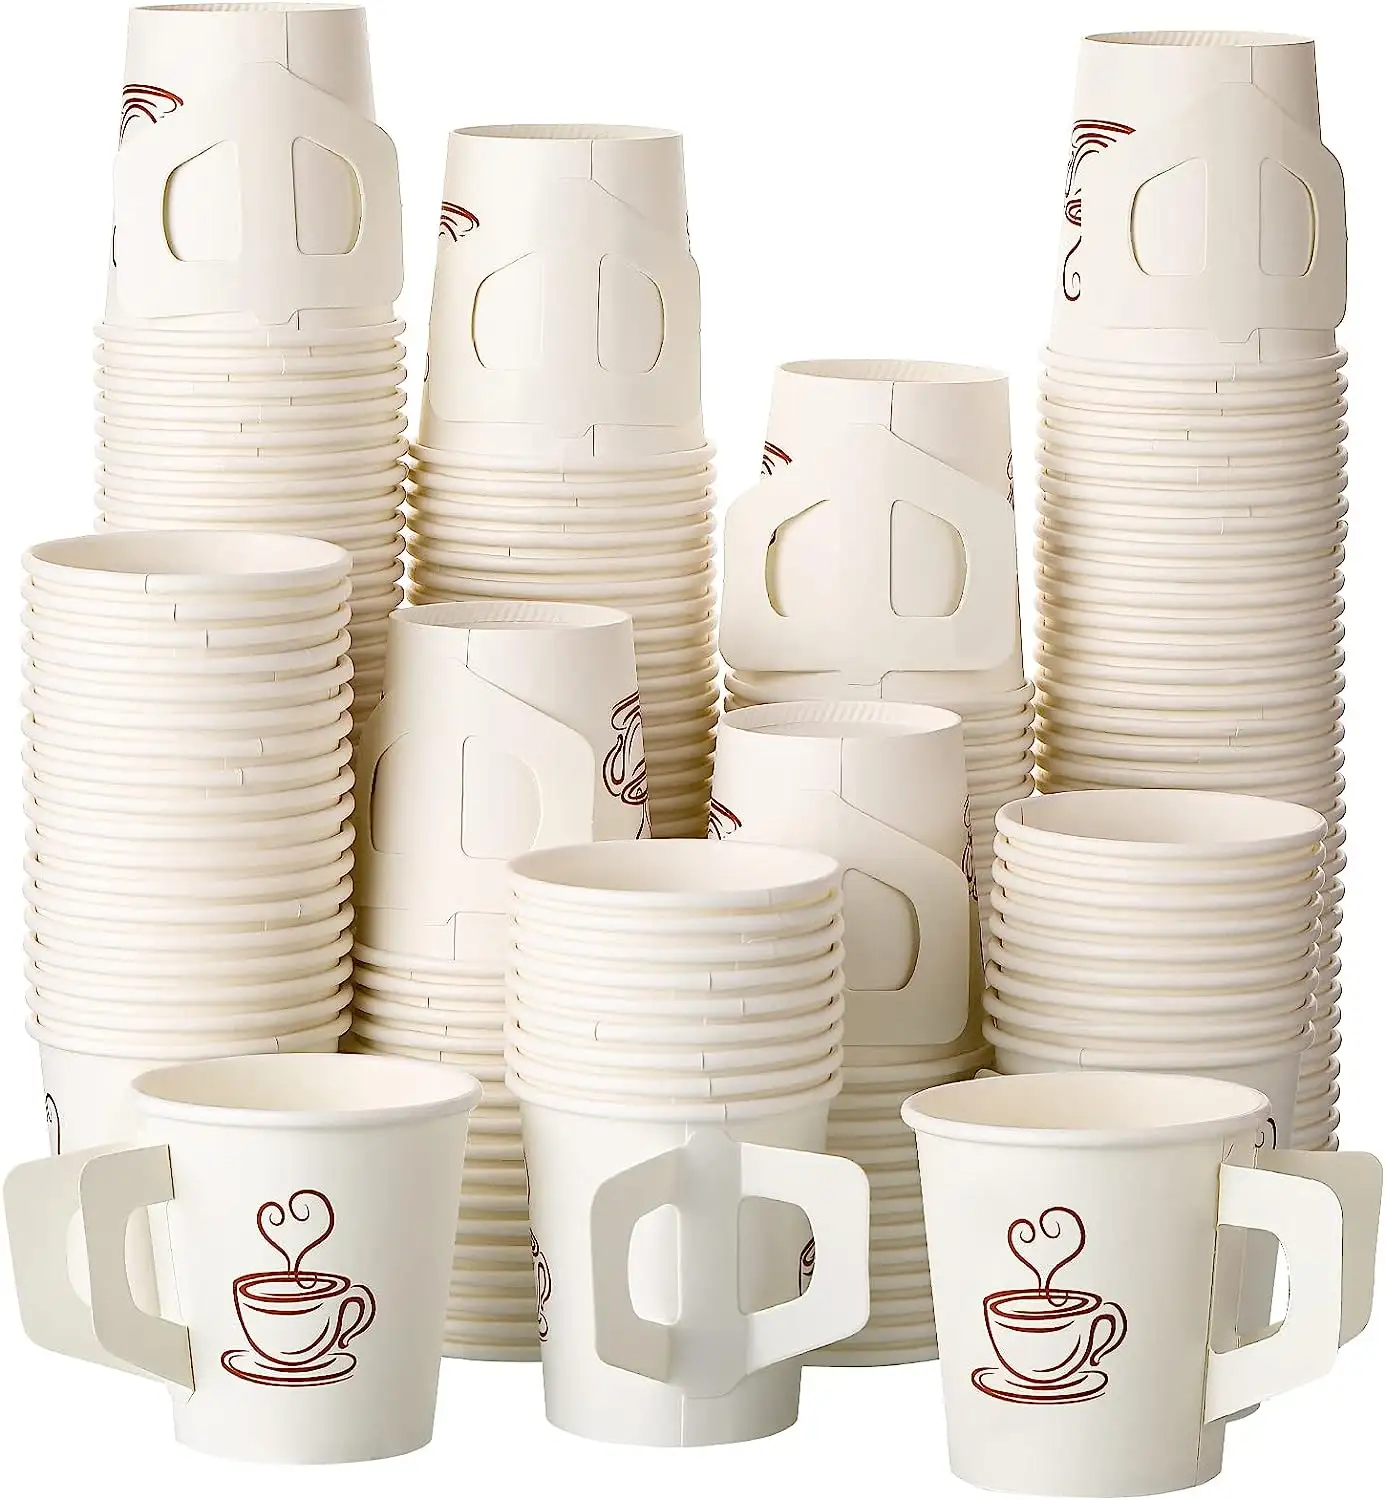 Gobelets en papier de vente chaude pour boissons chaudes Tasse à café jetable avec poignée